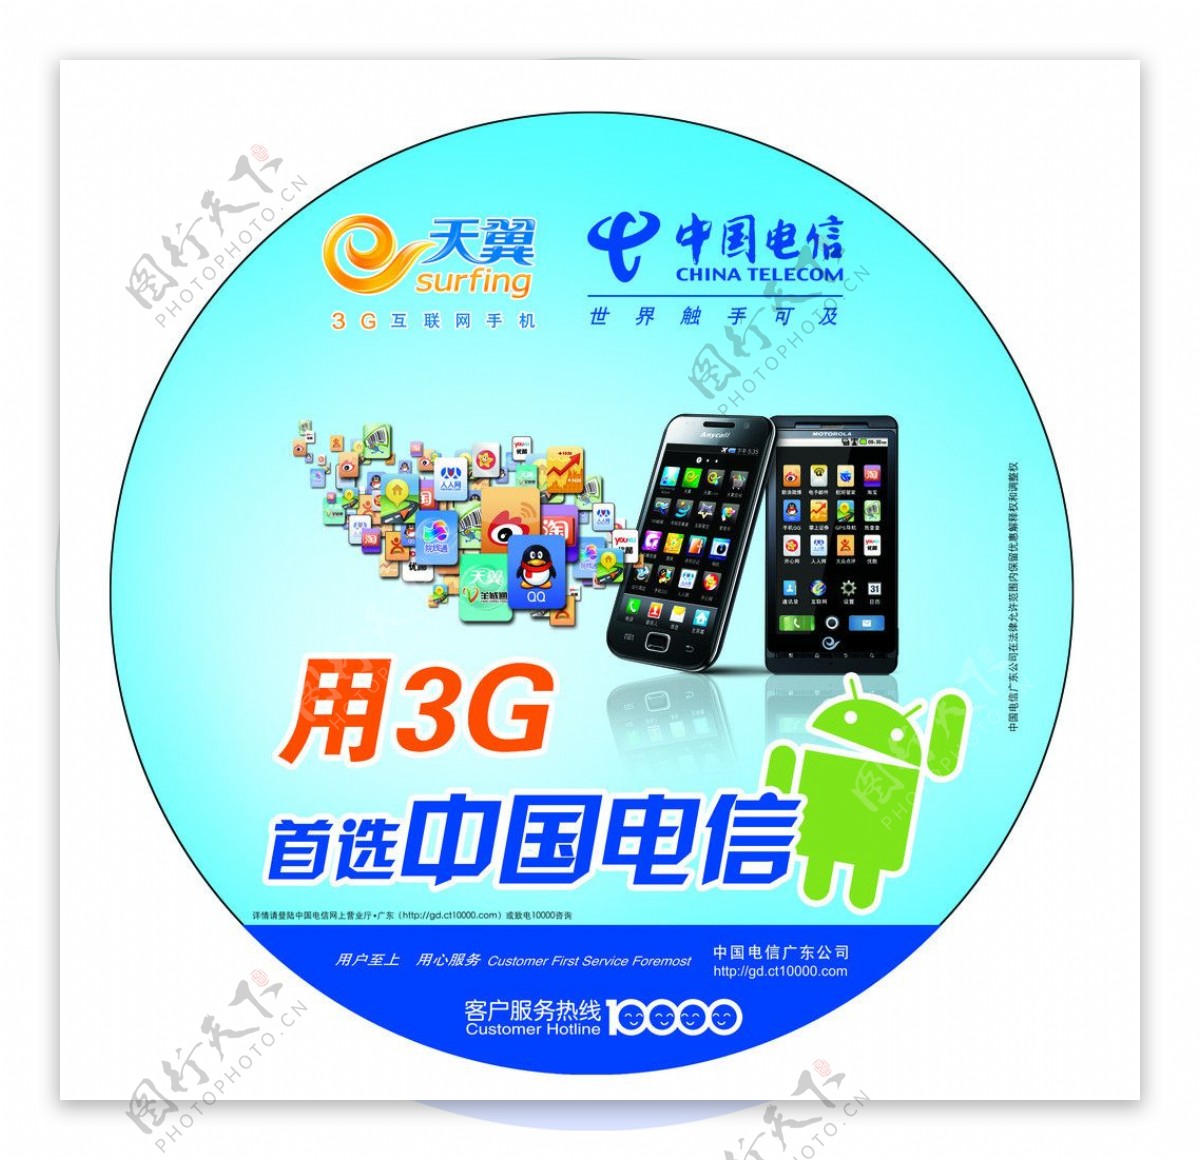 3G智能手机广告设计圆型灯箱广告图片